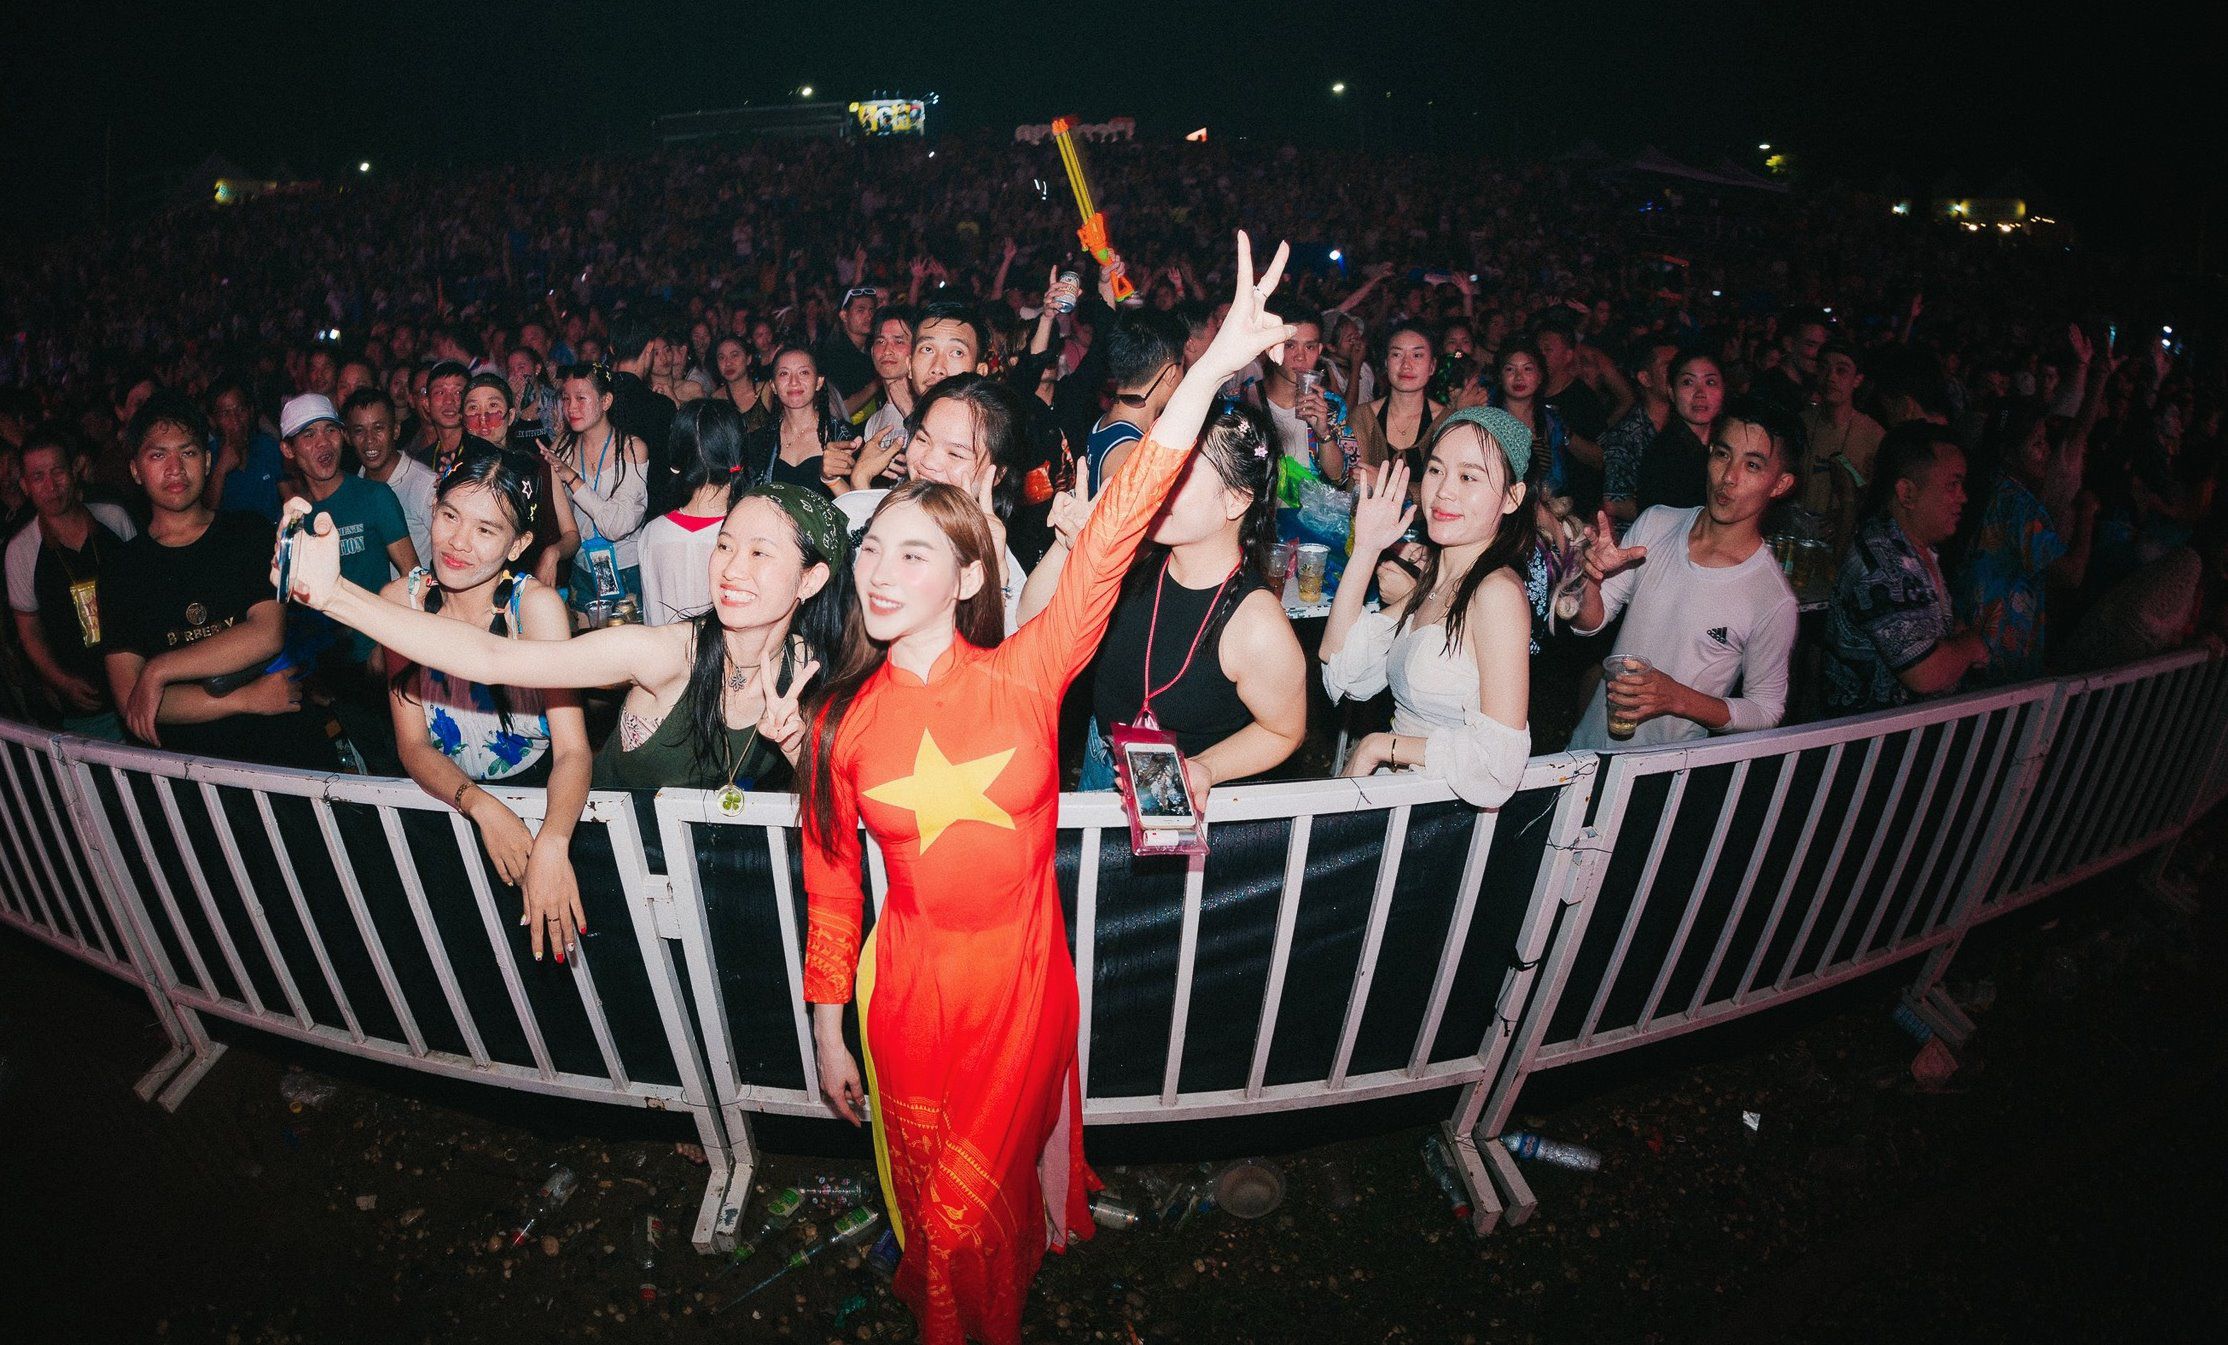 Nữ DJ miền Tây mặc áo dài biểu diễn trước 10 nghìn người ở Lào gây "sốt" - 1